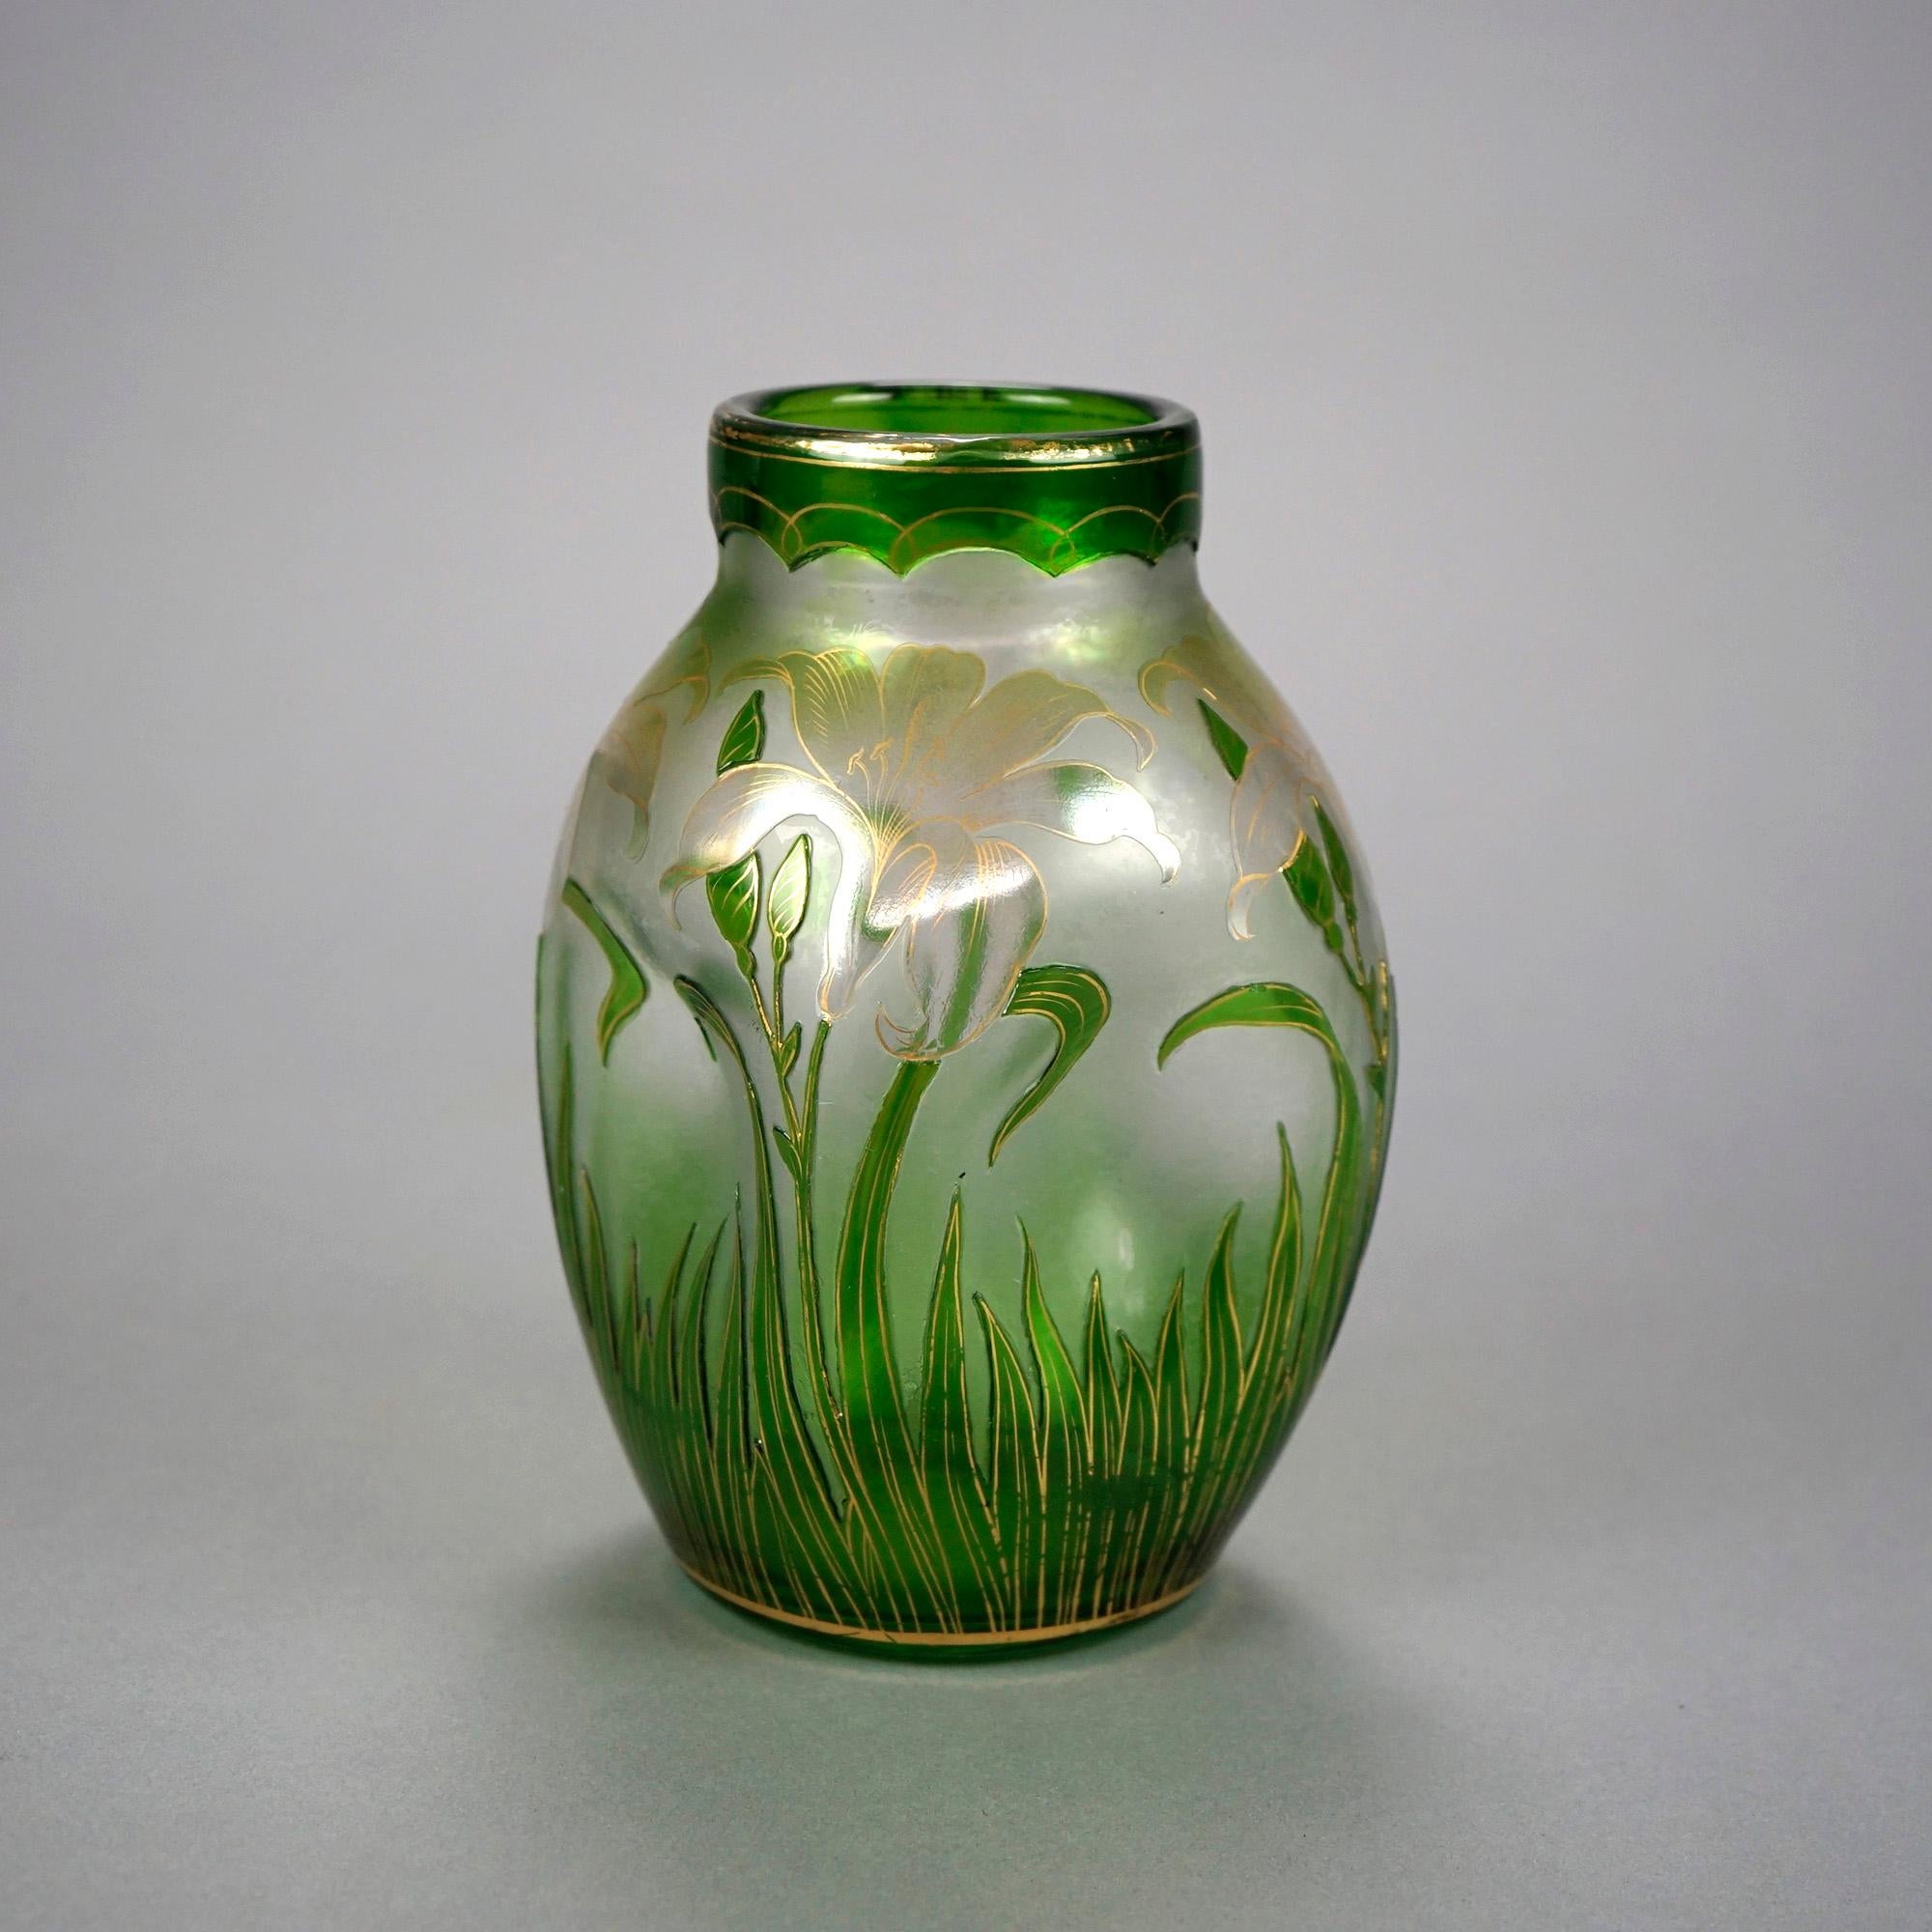 American Antique Art Nouveau Honesdale Emerald Cutback Art Glass Vase, Lily Decor, c1900